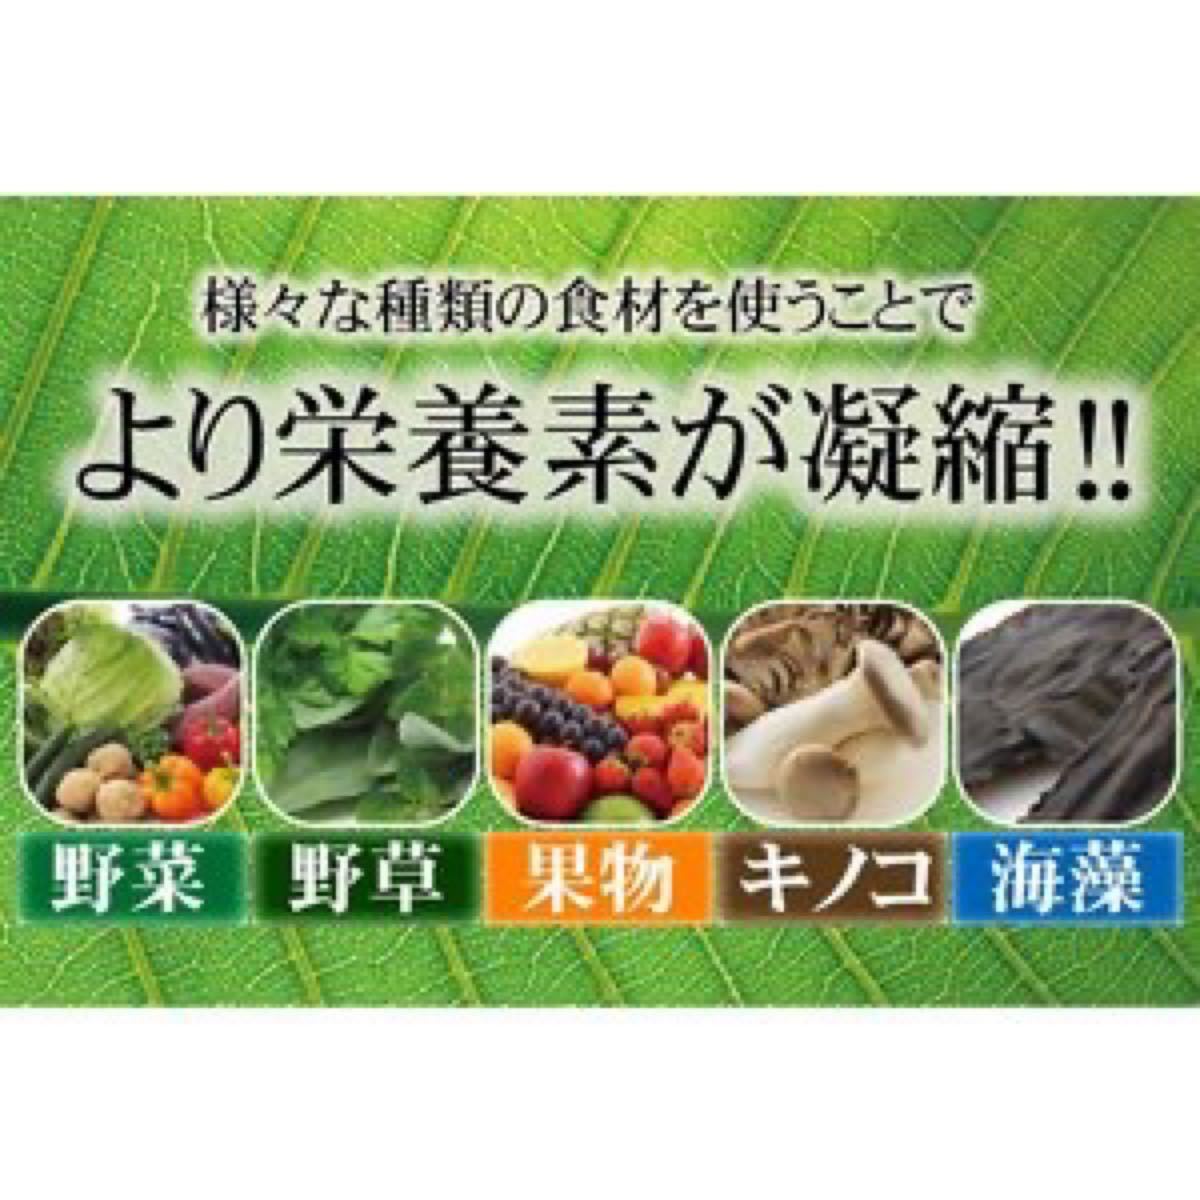 超醗酵 酵素粒377 栄養補助食品 ダイエット サプリ 美容 健康 野菜不足 通販